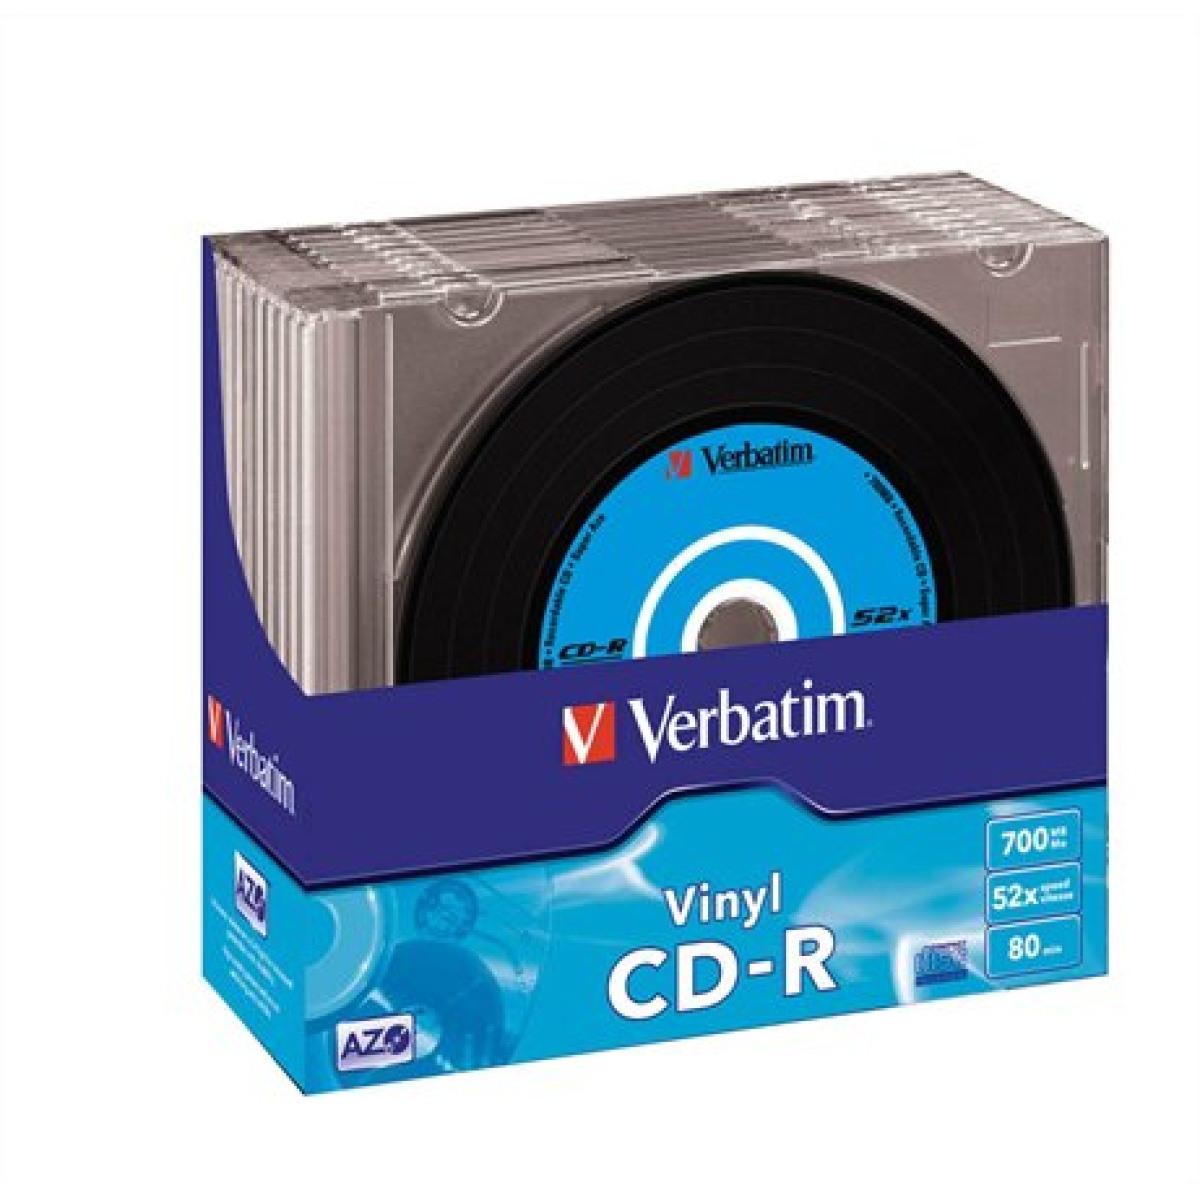 CD-R lemez bakelit lemez-szerű felület AZO 700MB 52x 10 db vékony tok VERBATIM Vinyl